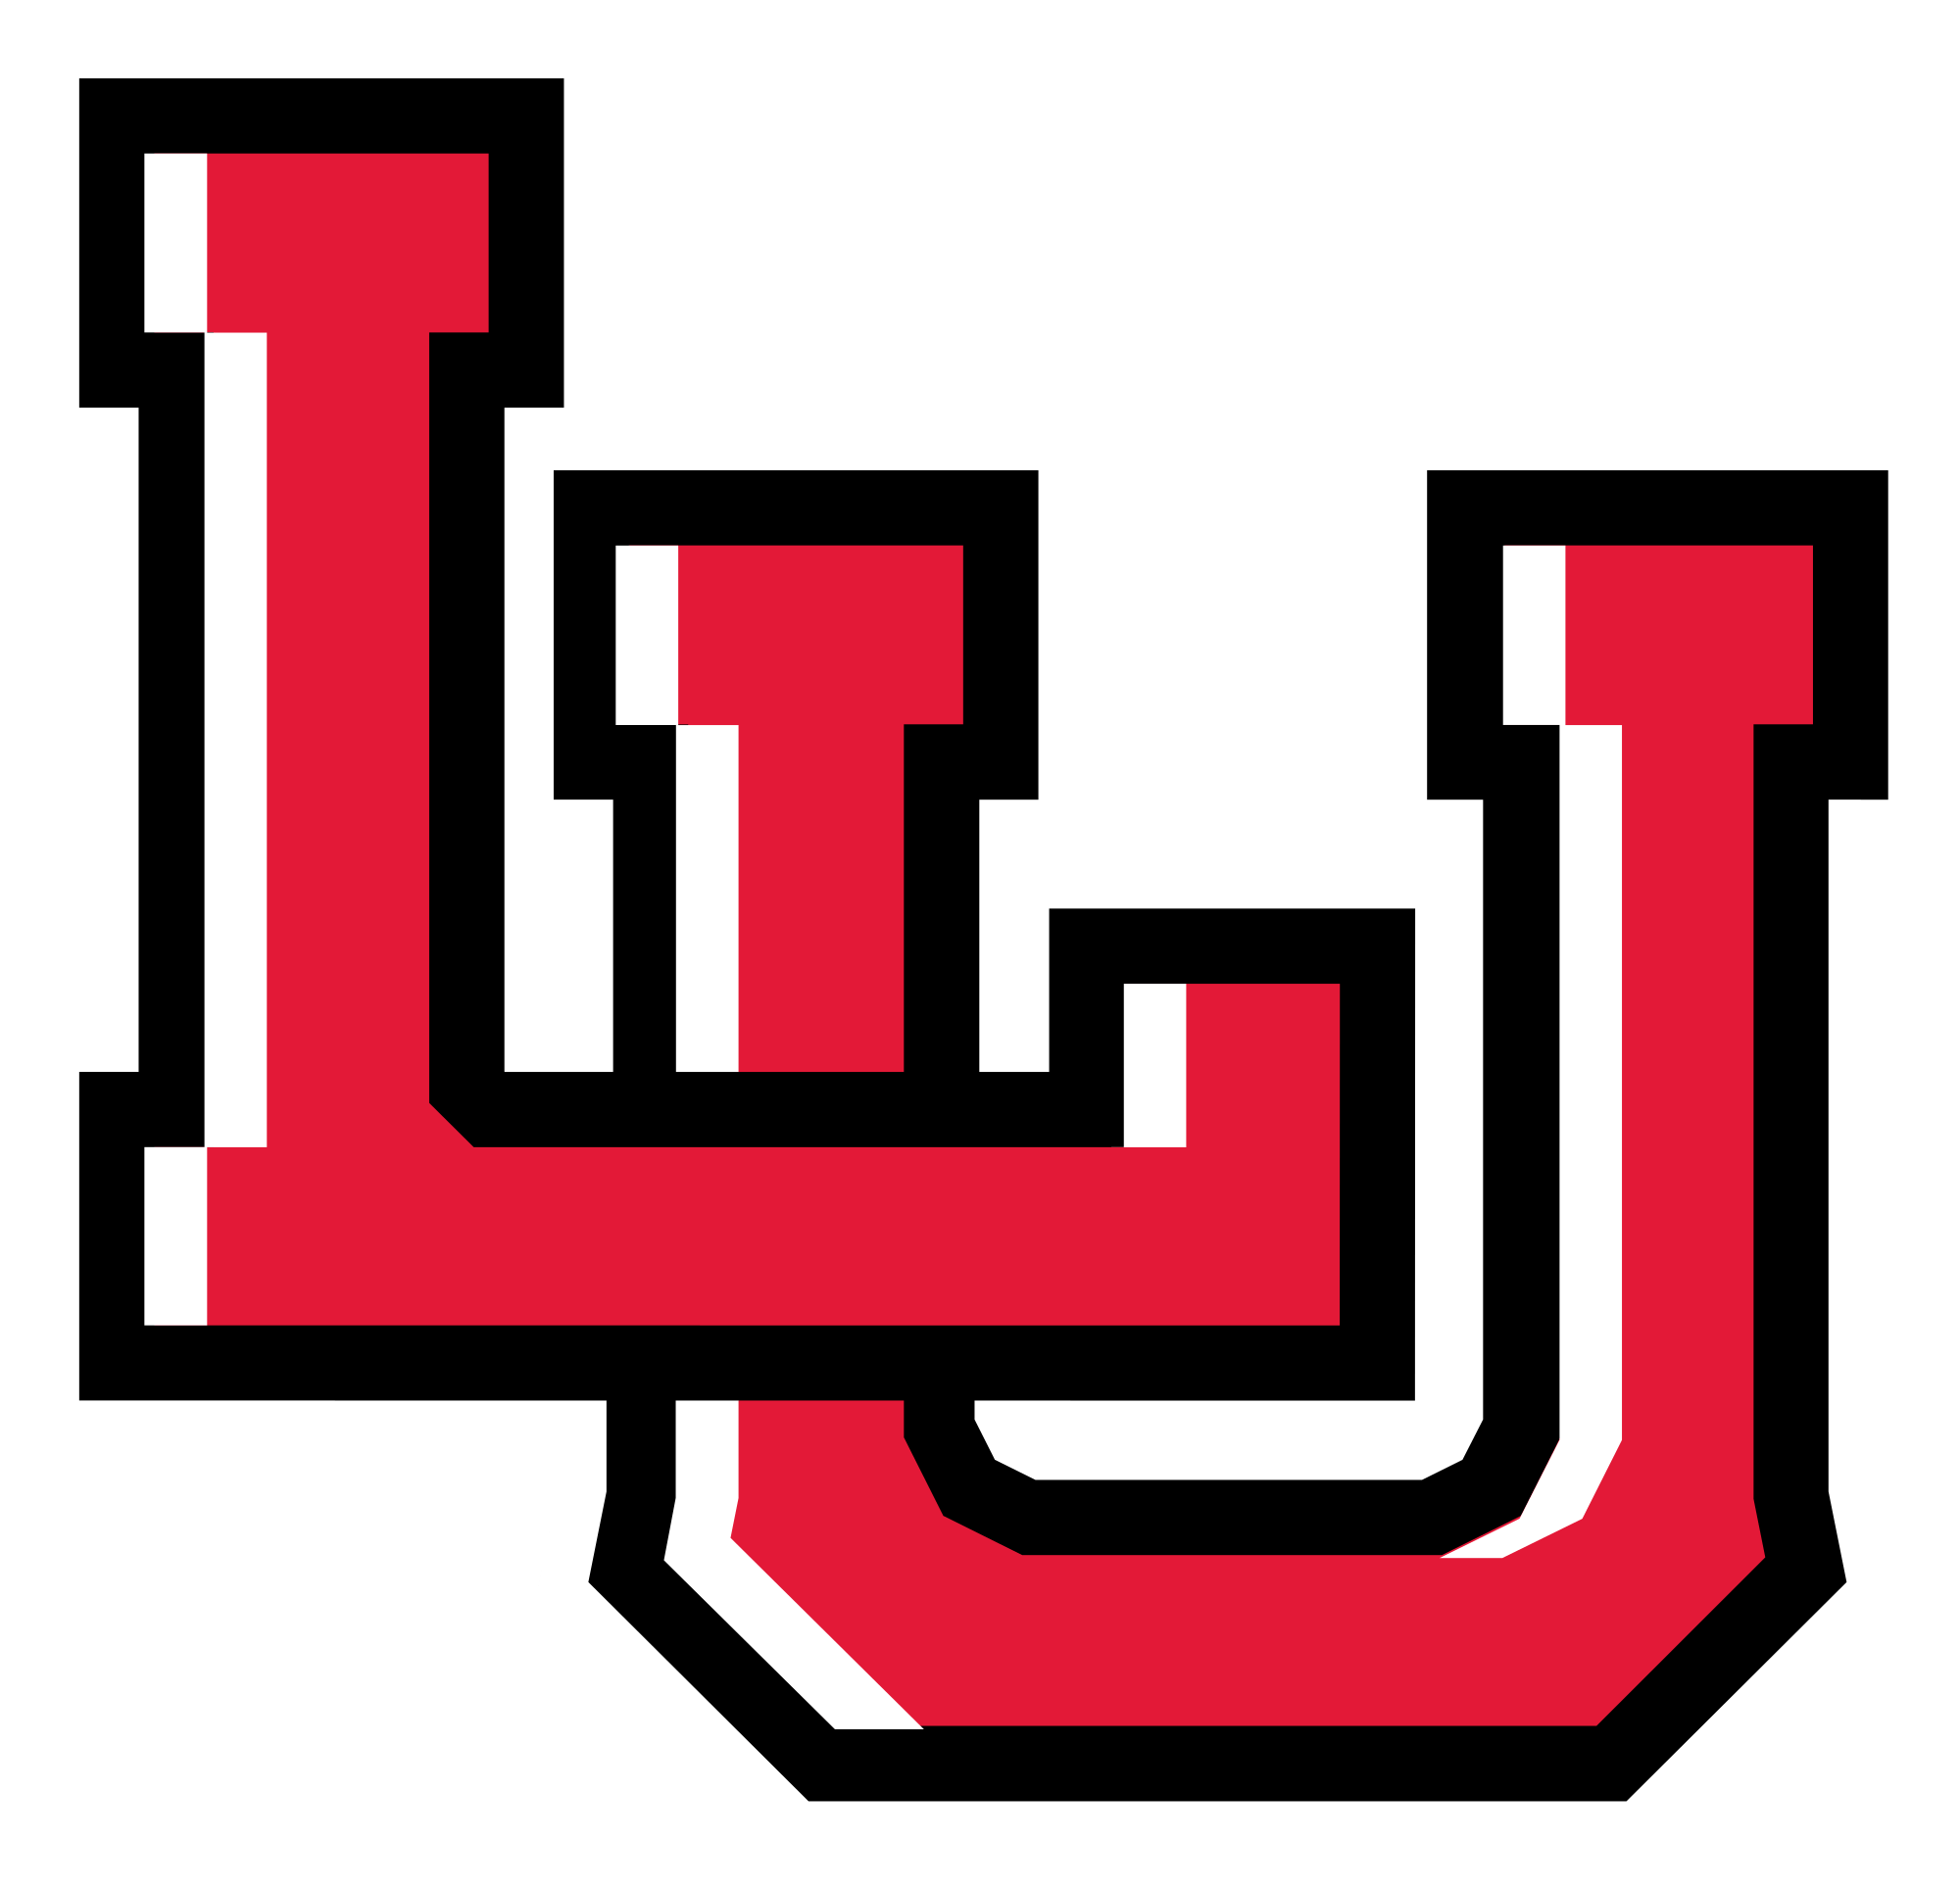 Lamar Logo - The Lamar Cardinals